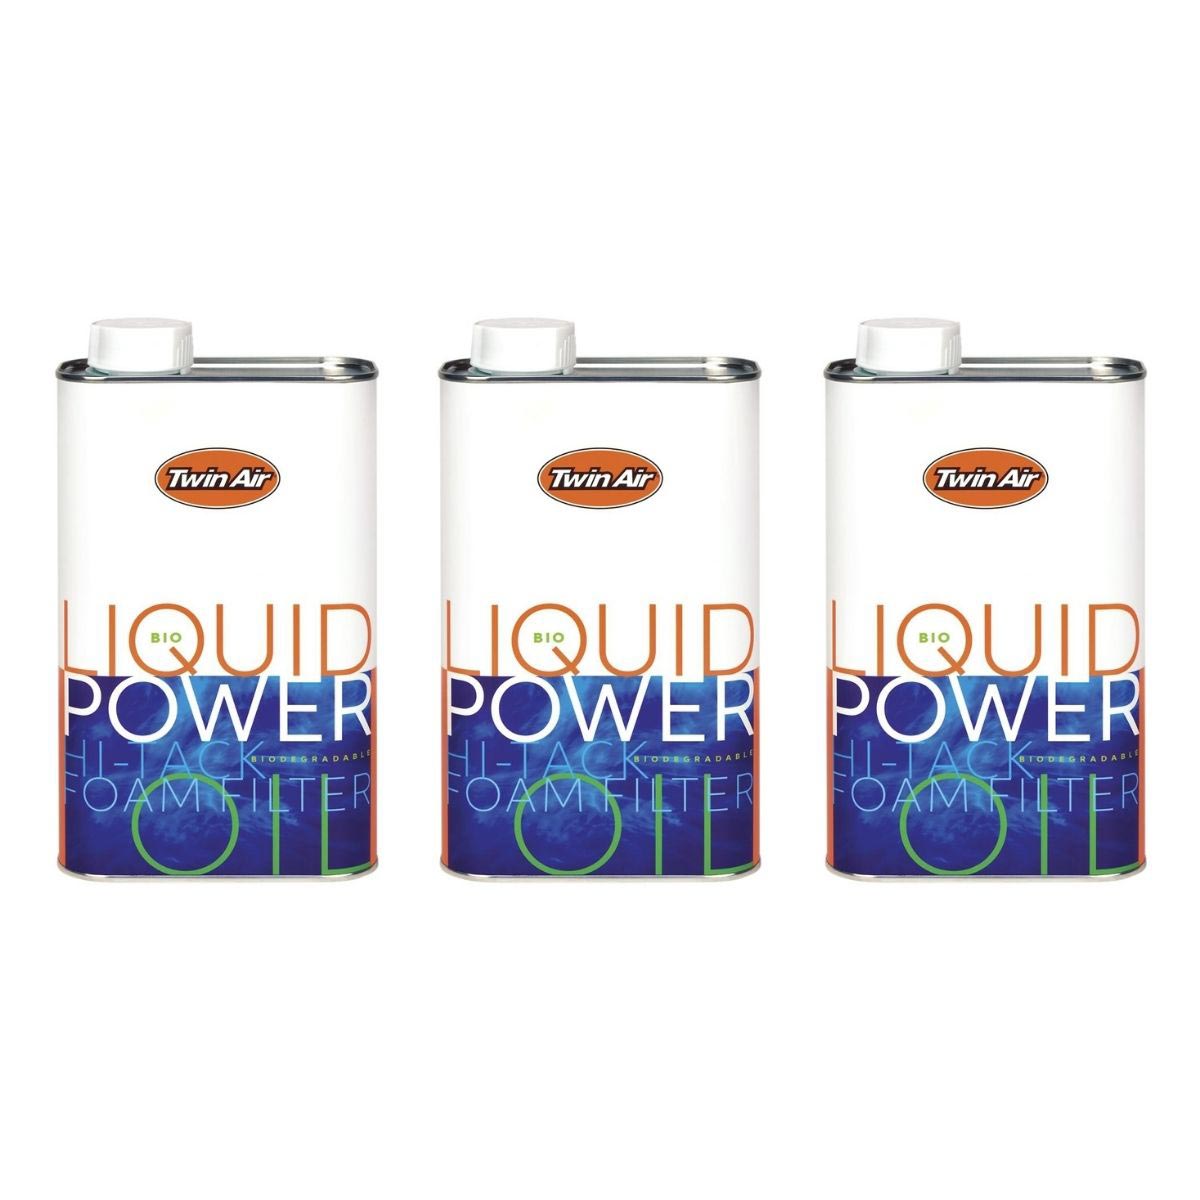 Twin Air Air Filter Oil Liquid Power Bio Set of 3, 1 L each